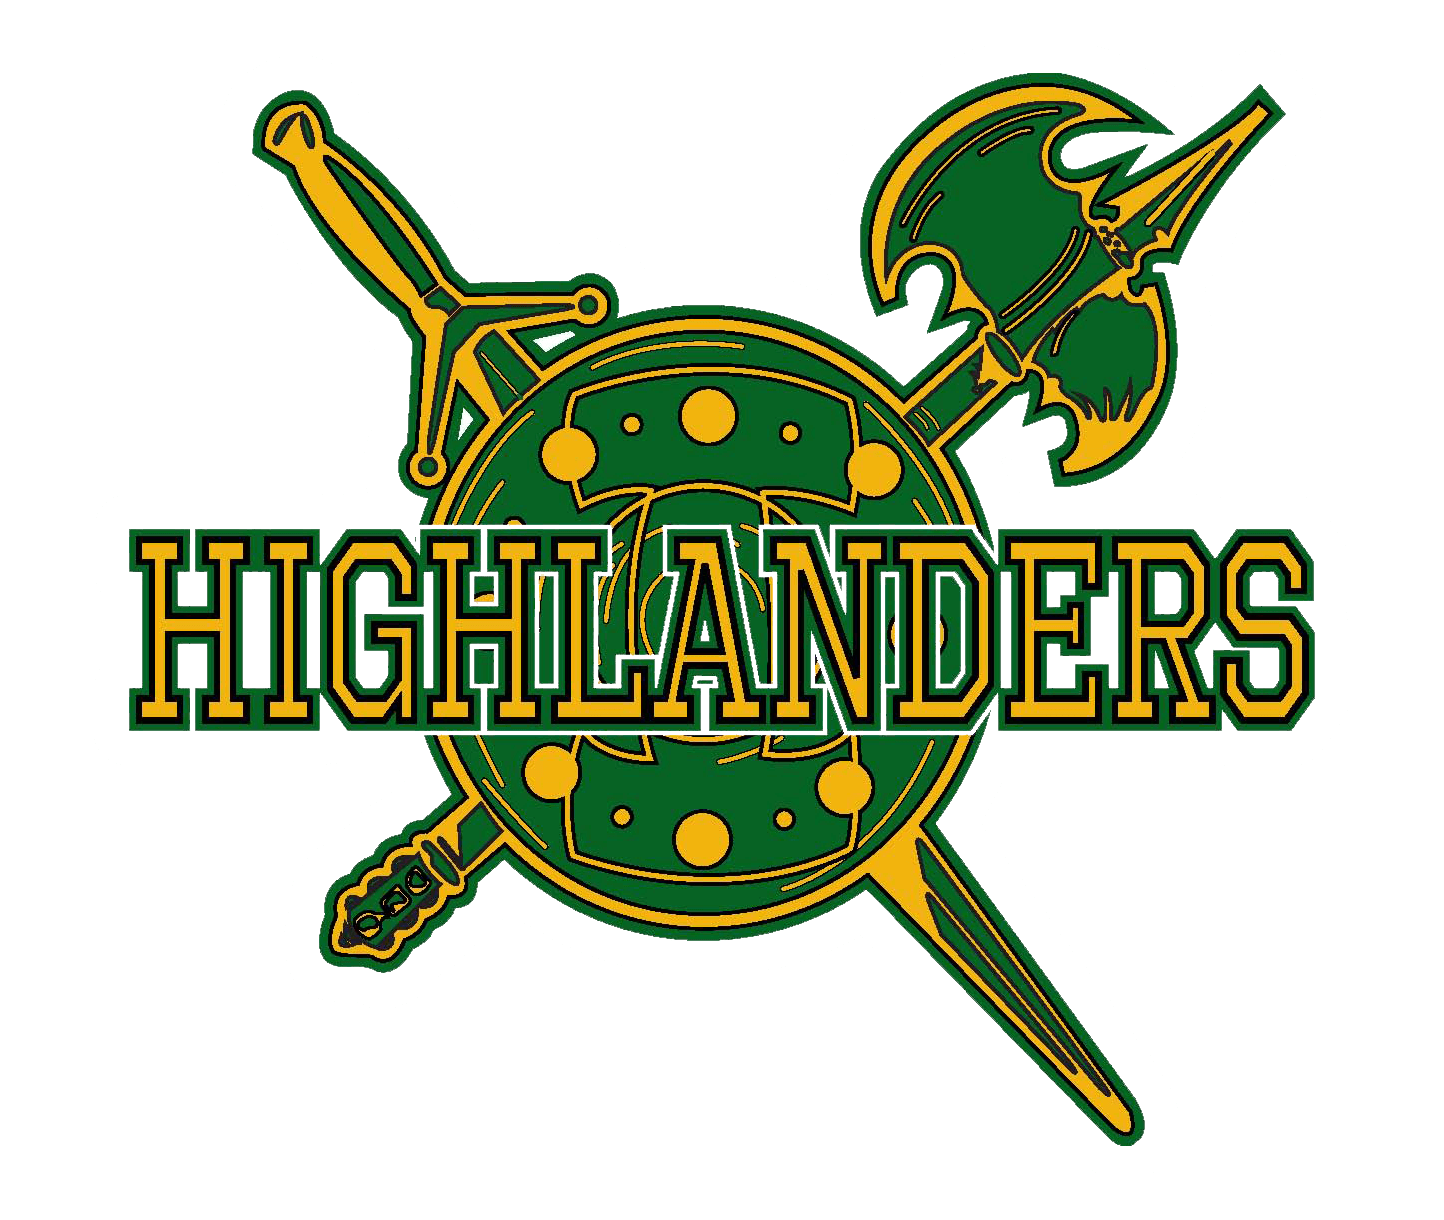 Highlander Logo - Incline - Team Home Incline Highlanders Sports